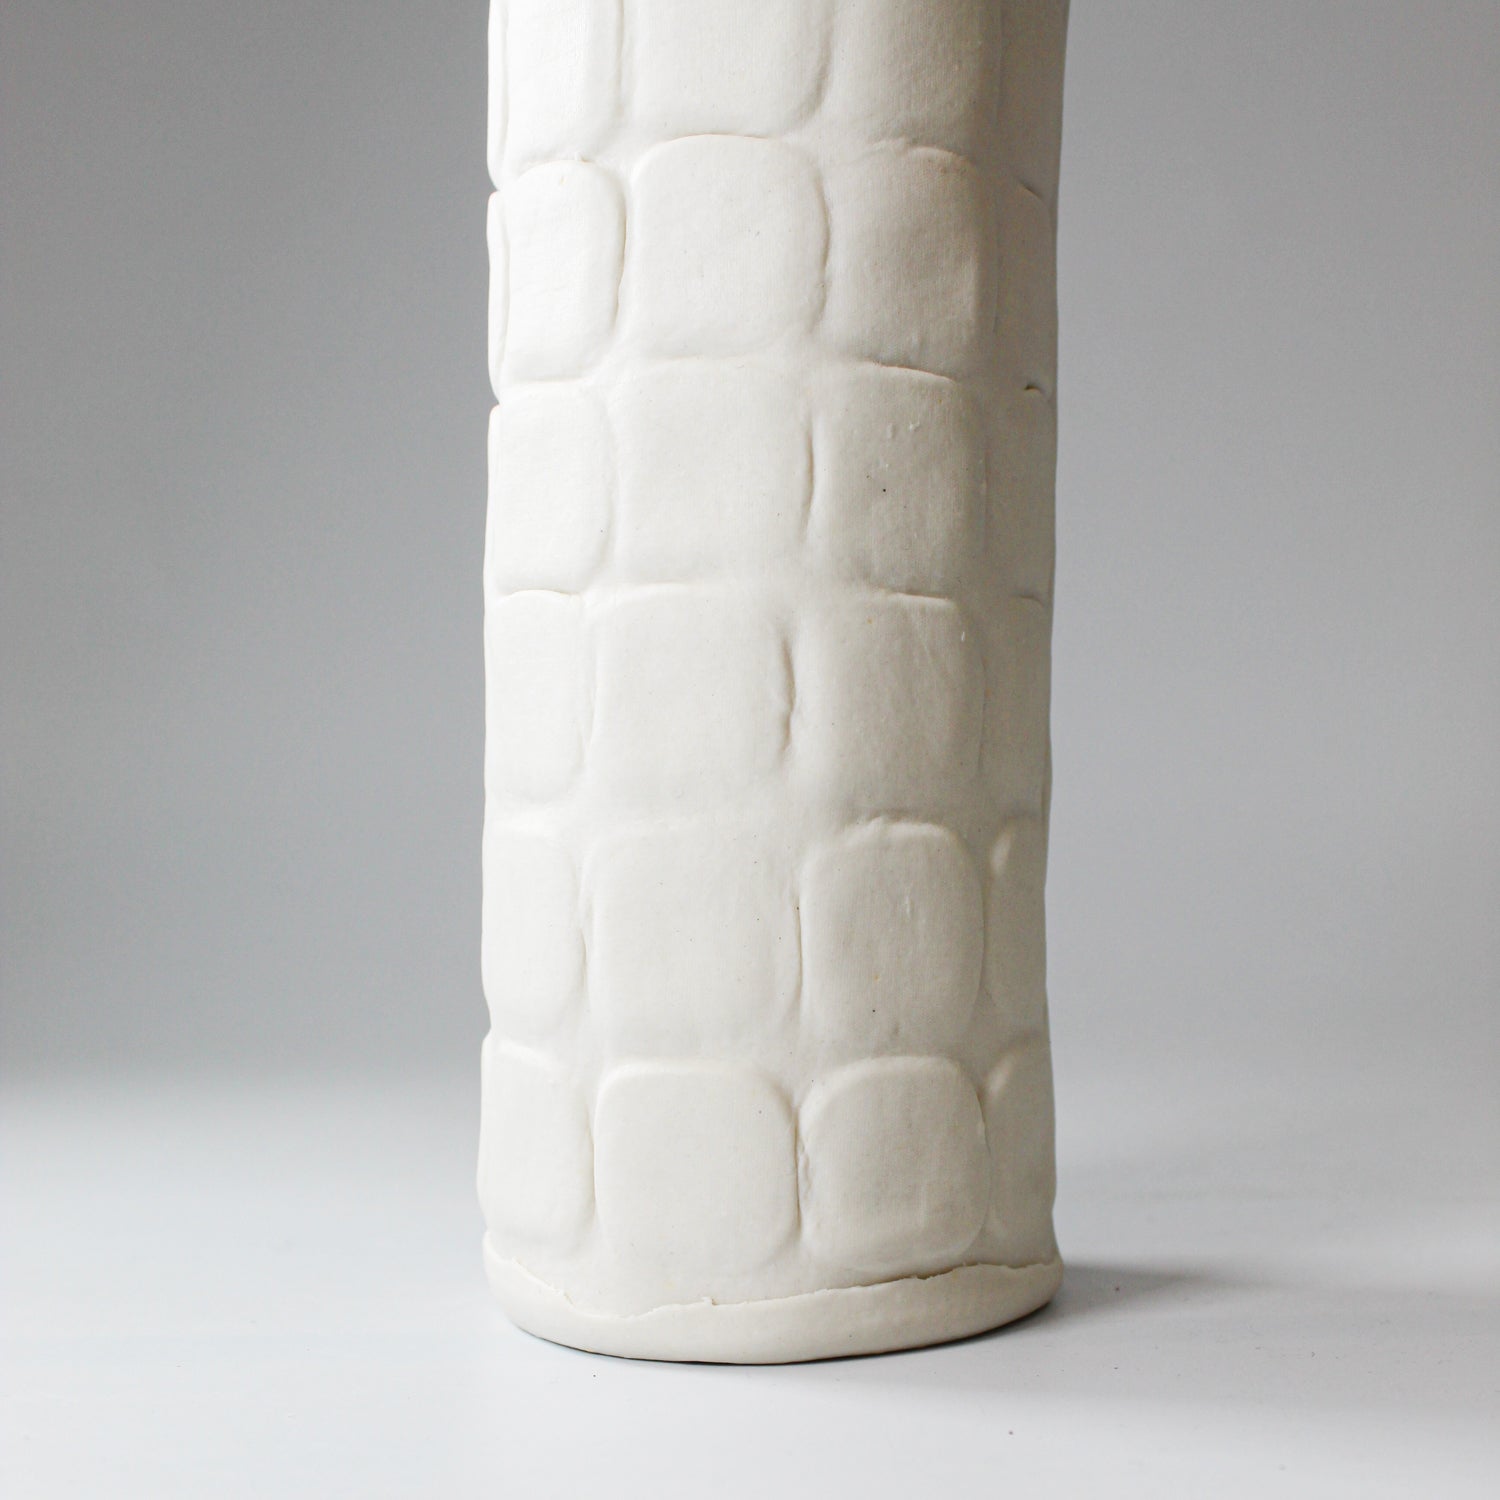 Bottom of tall slim handmade porcelain vase 